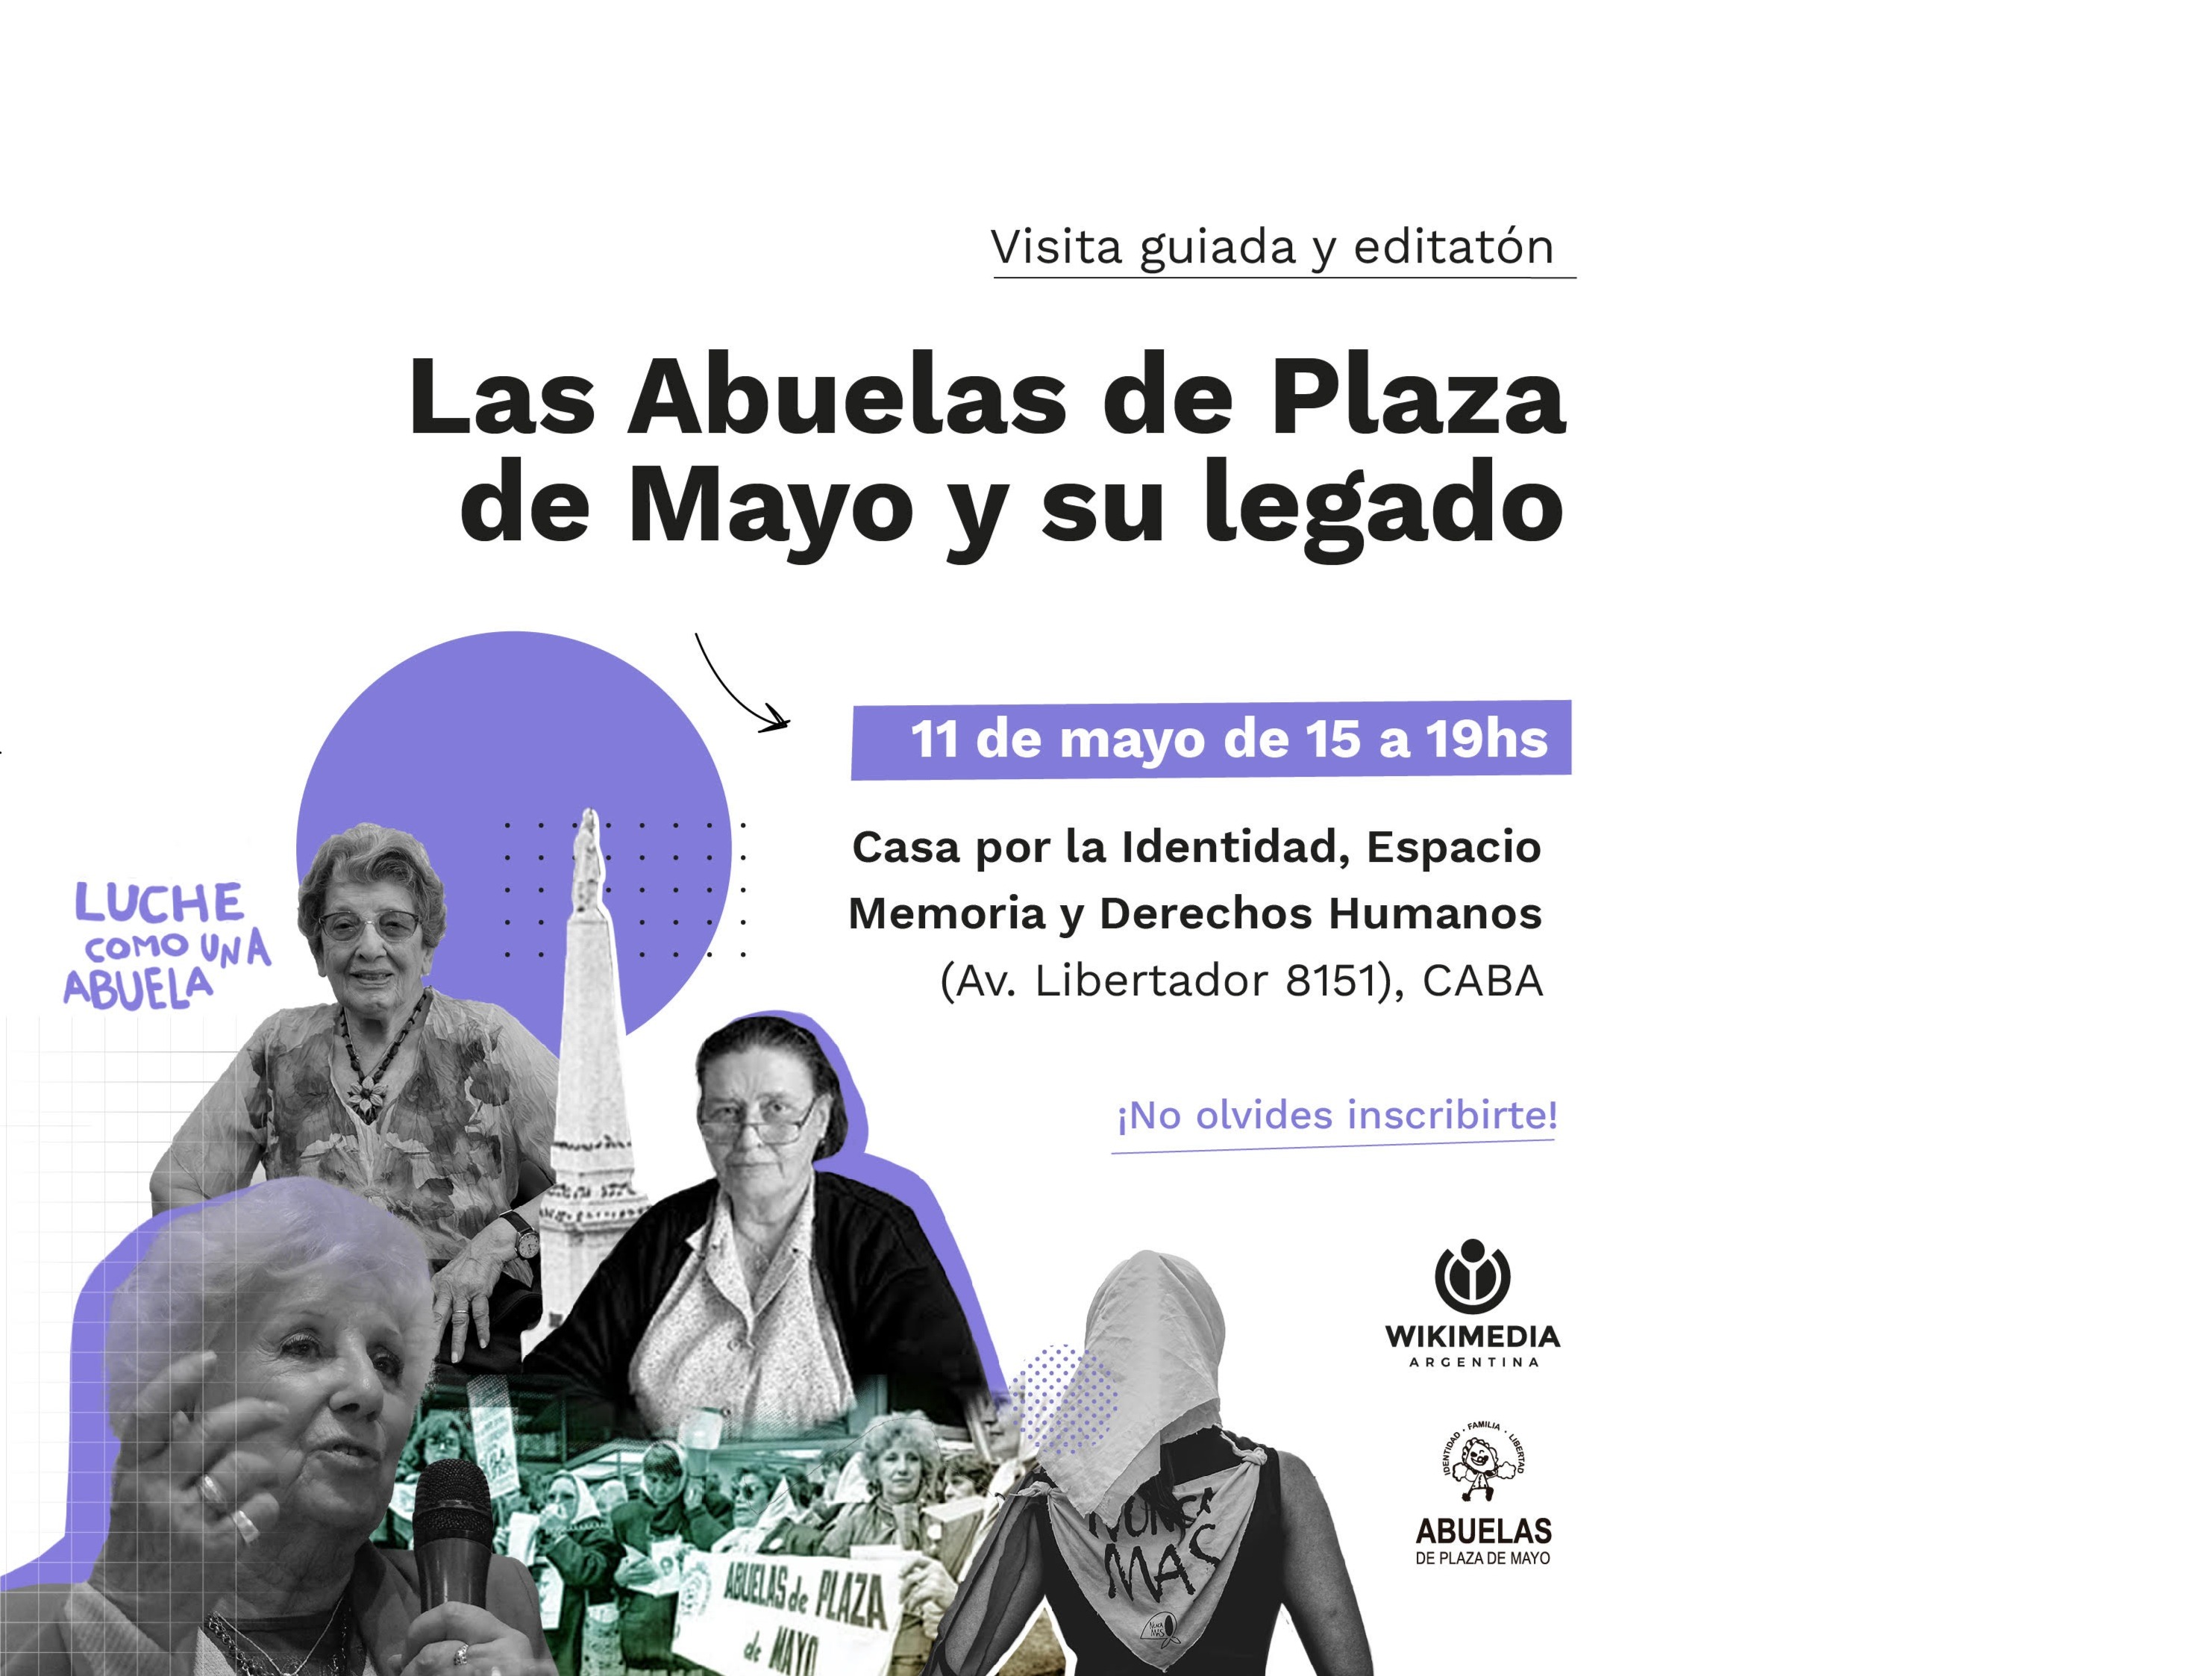 Invitamos al editatón "Las Abuelas y su legado"